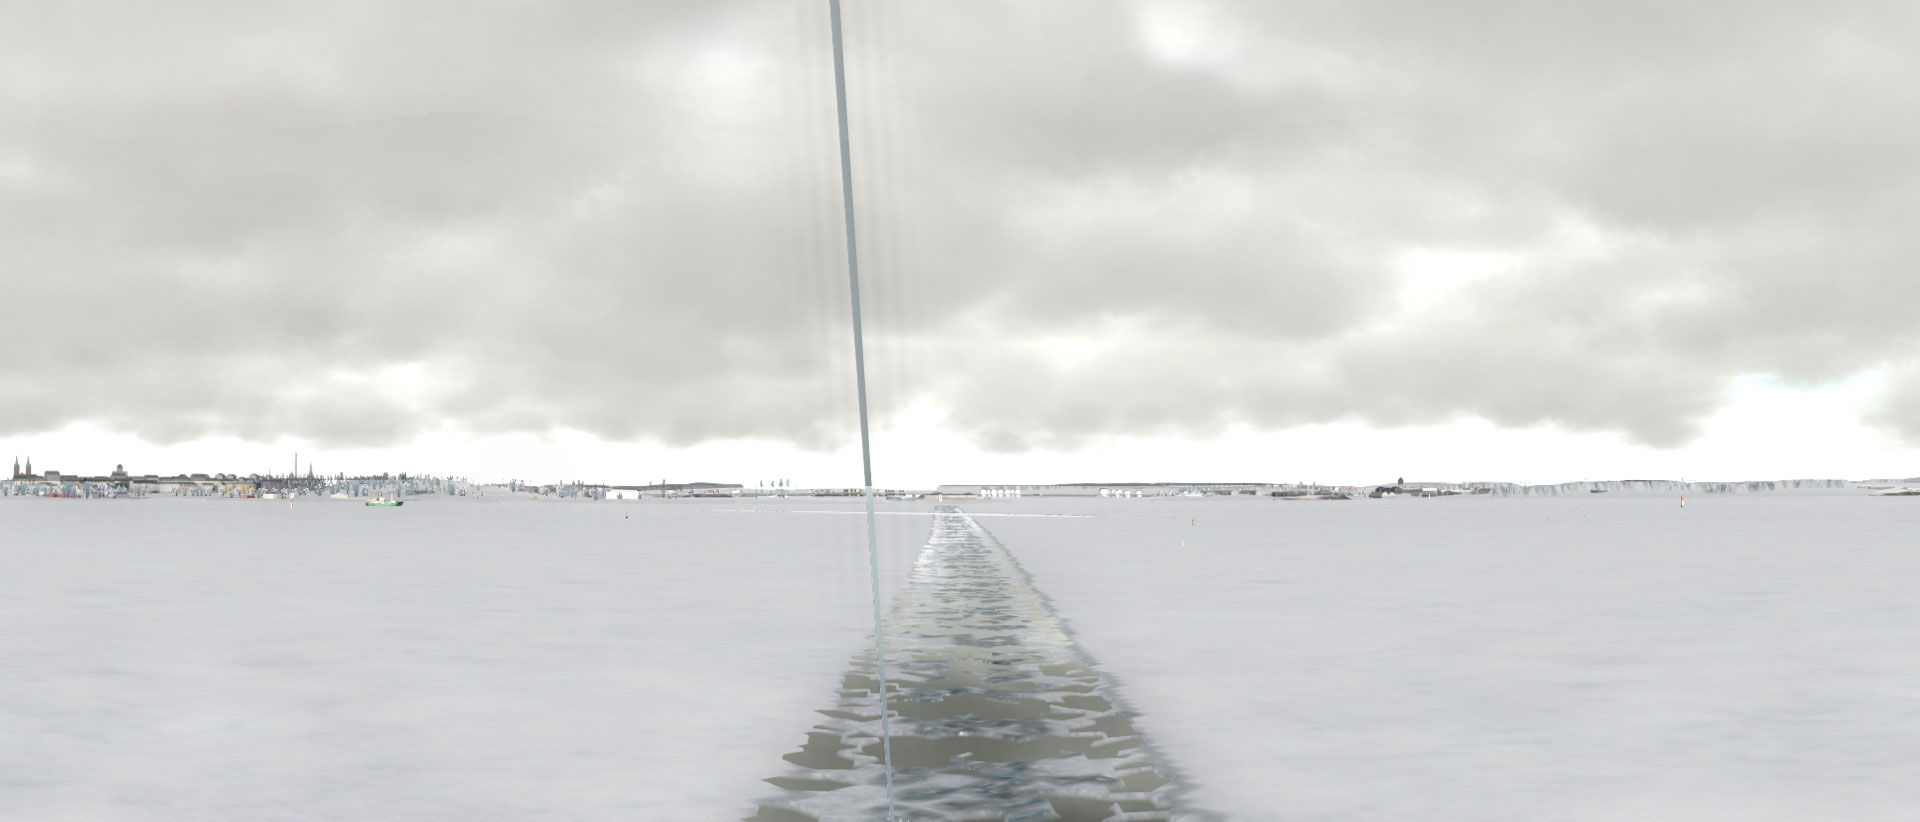 IS Full Mission Bridge Simulator for Arctic Operations